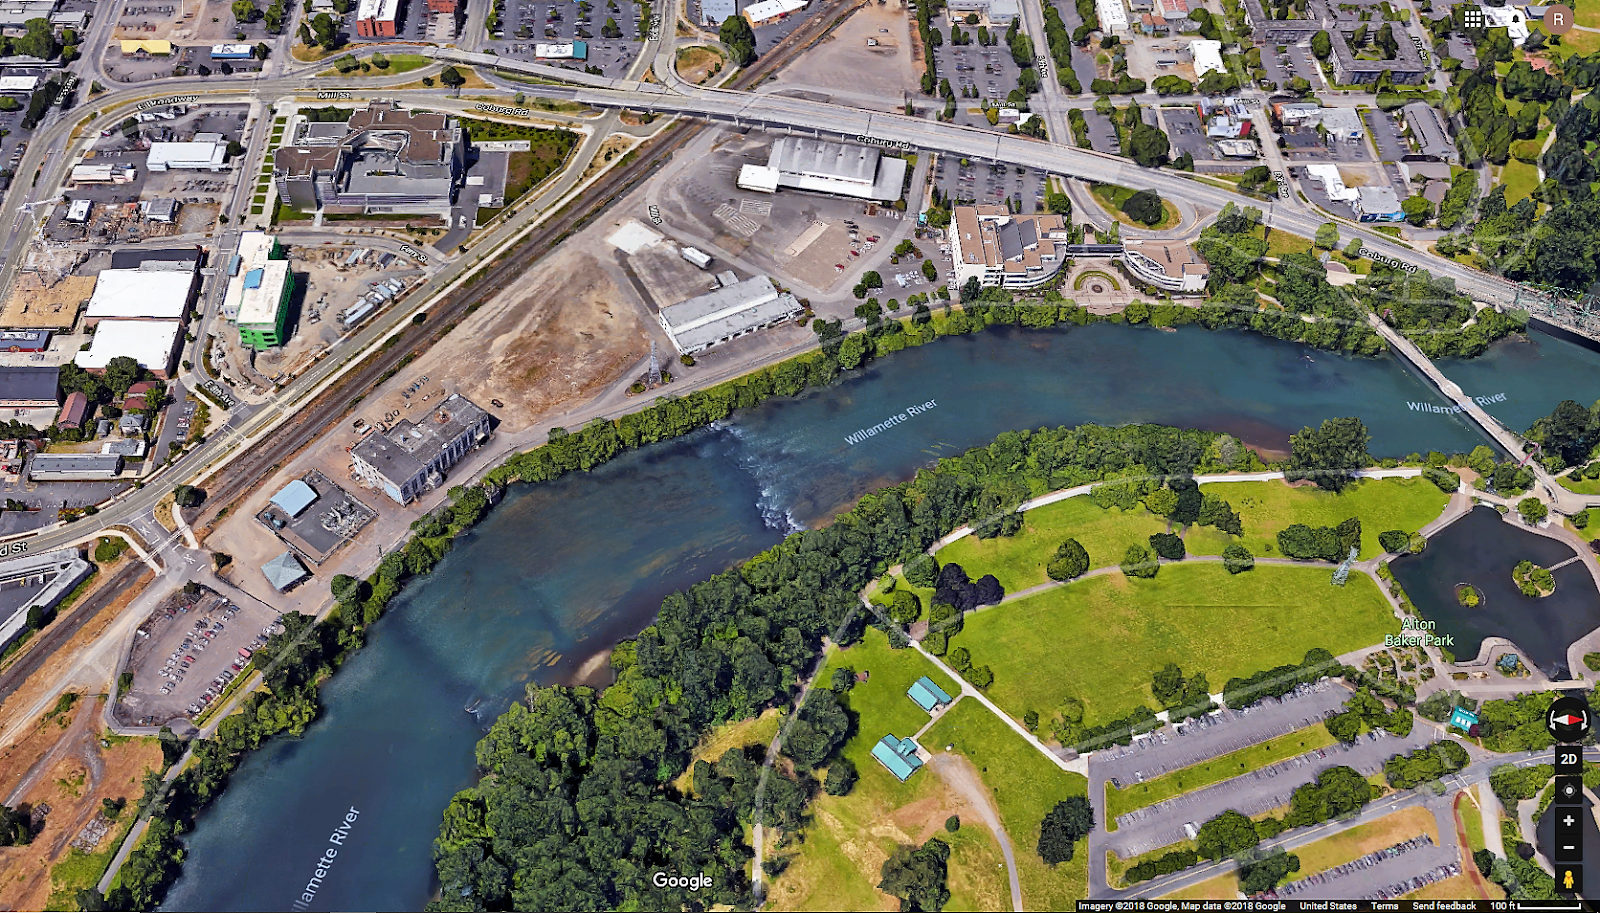 SW Oregon Architect: Downtown Riverfront Park Concepts